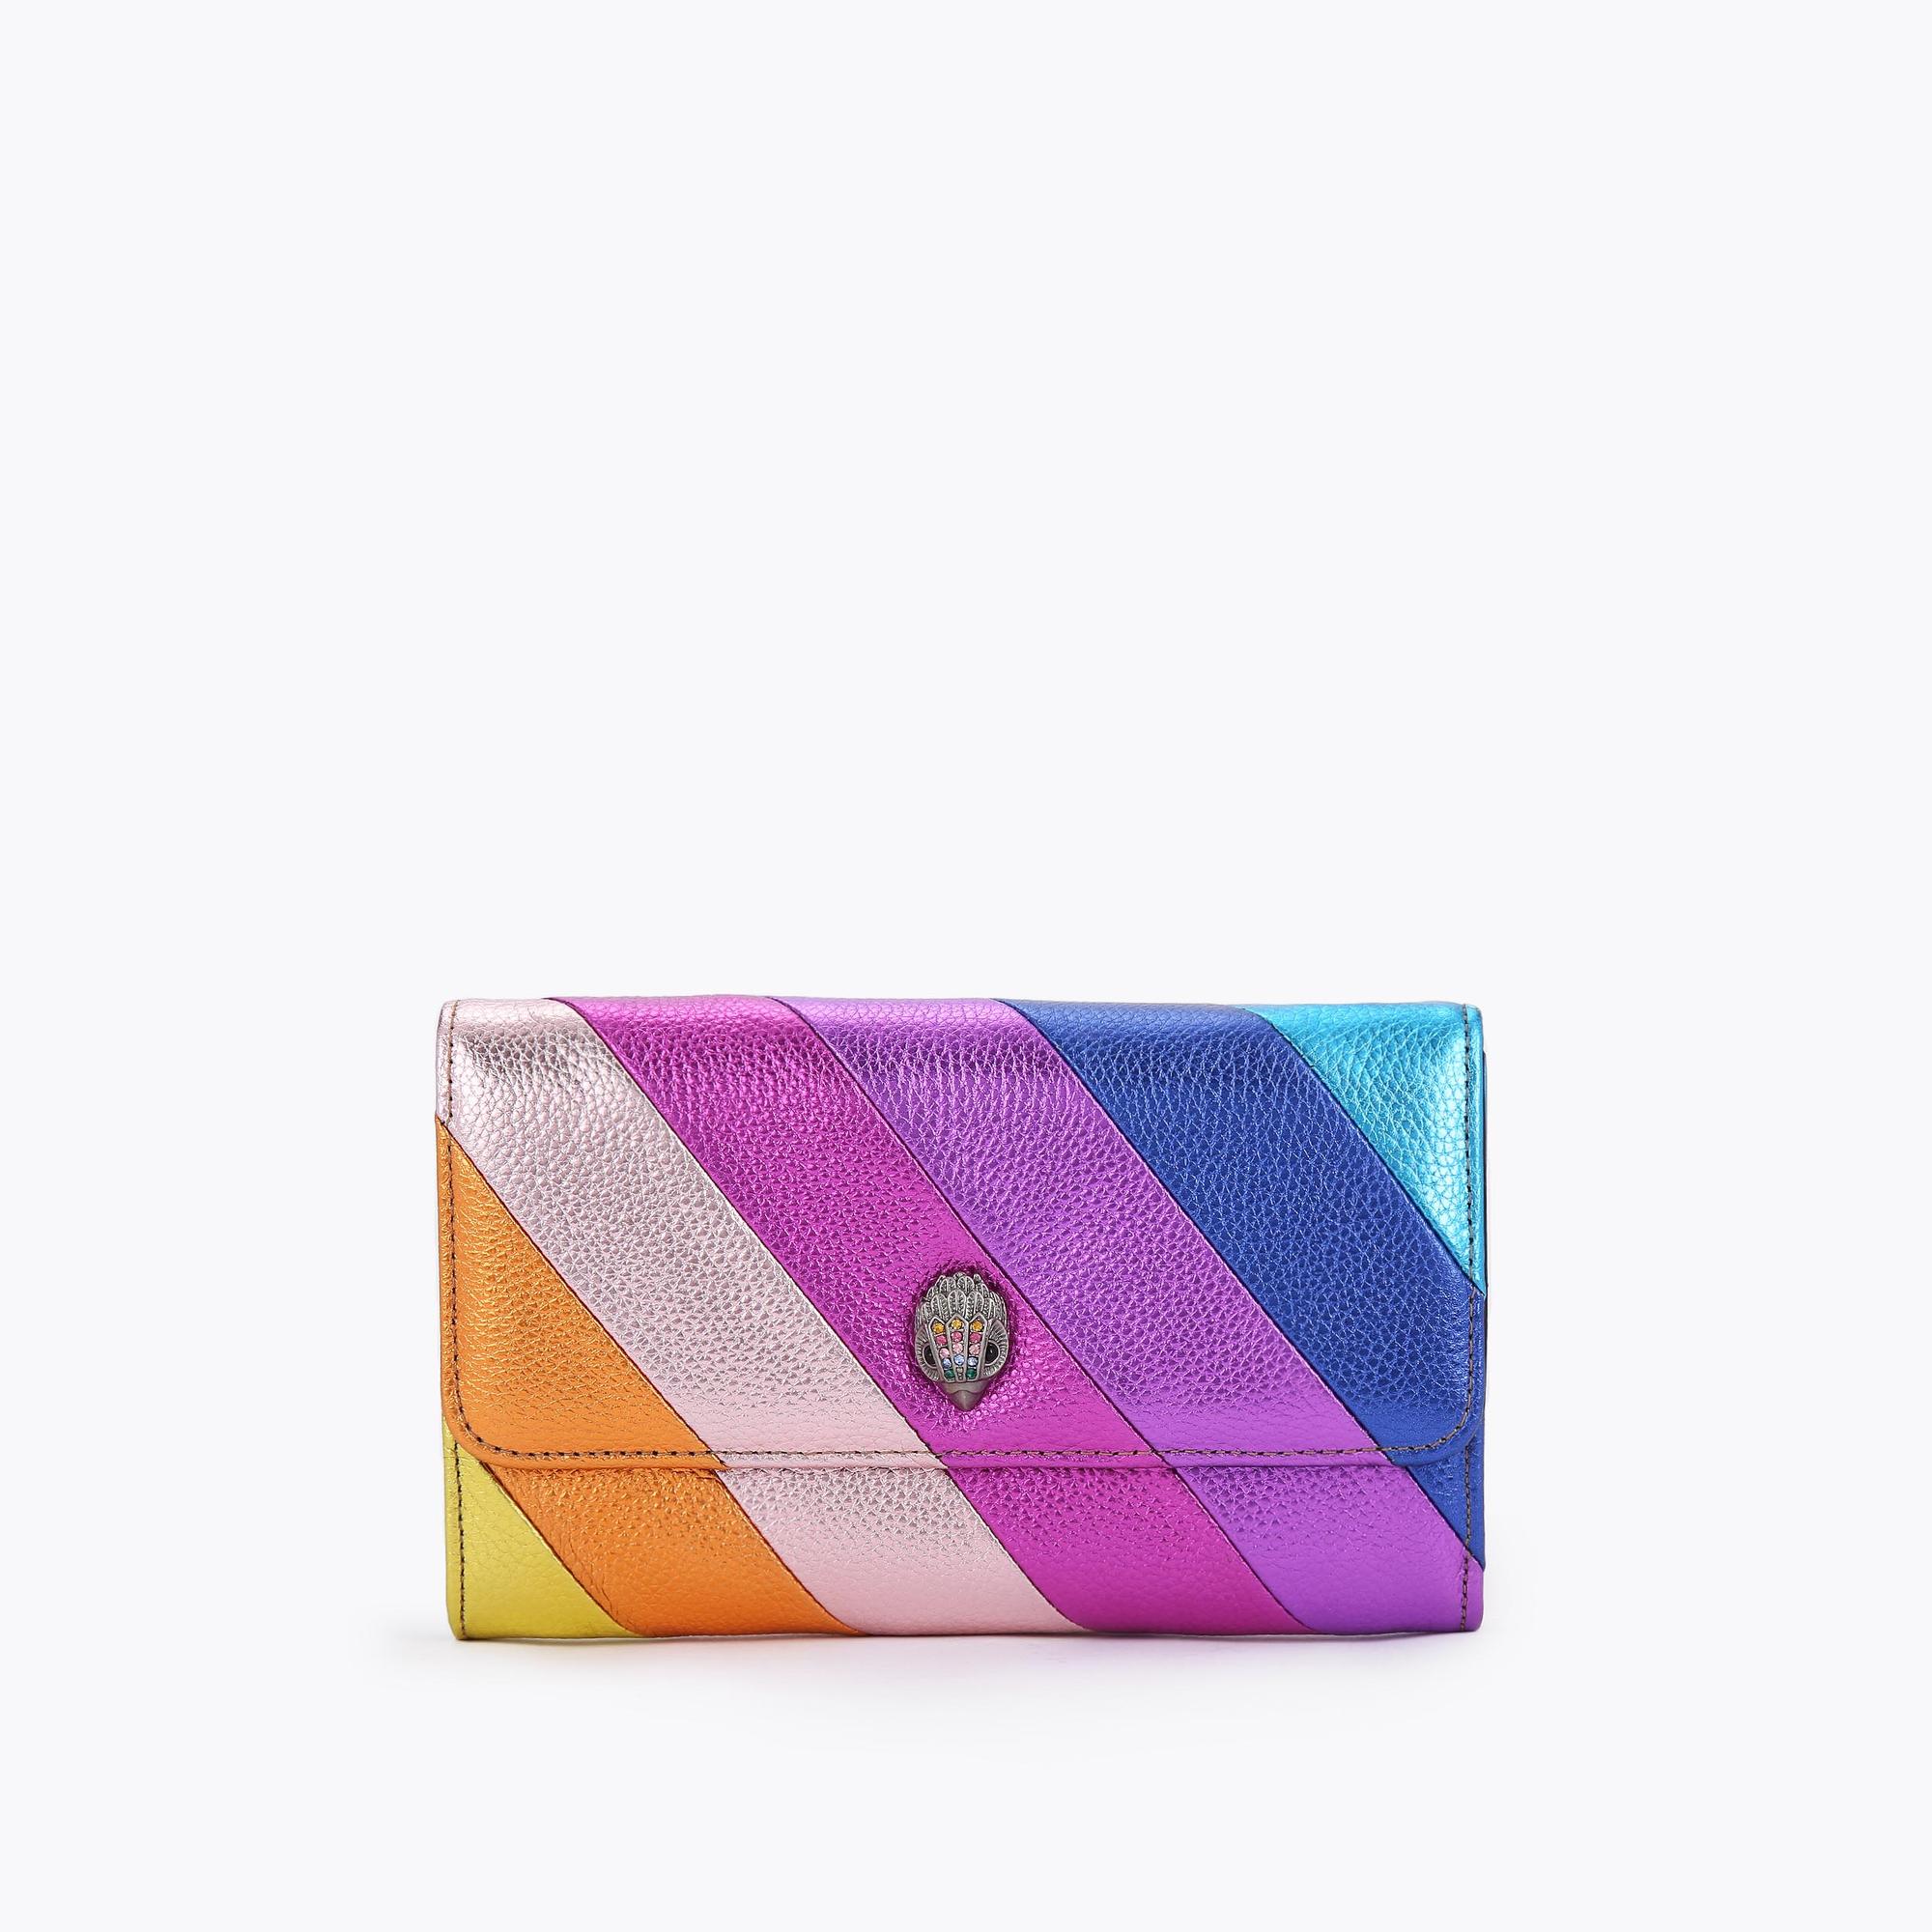 K STRIPE CHAIN WALLET Kensington Rainbow Stripe Leather Bag by KURT GEIGER  LONDON